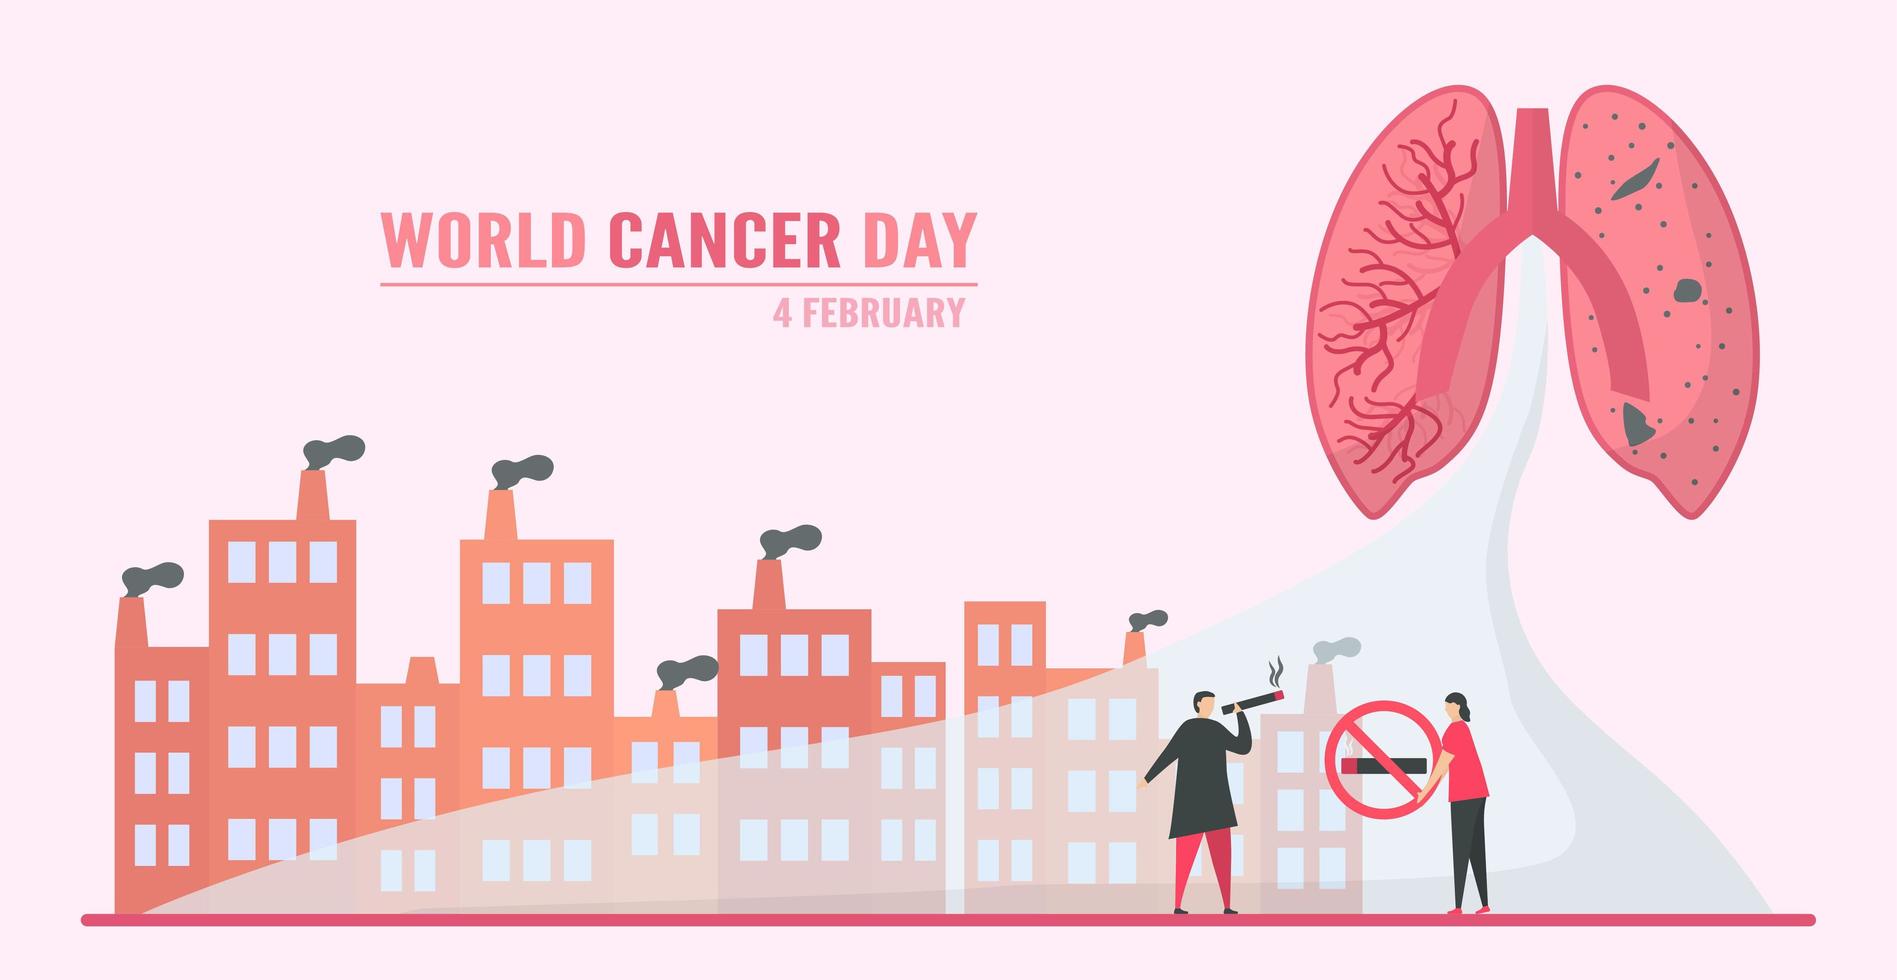 World Cancer Day Lung Cancer Through Smoking vector